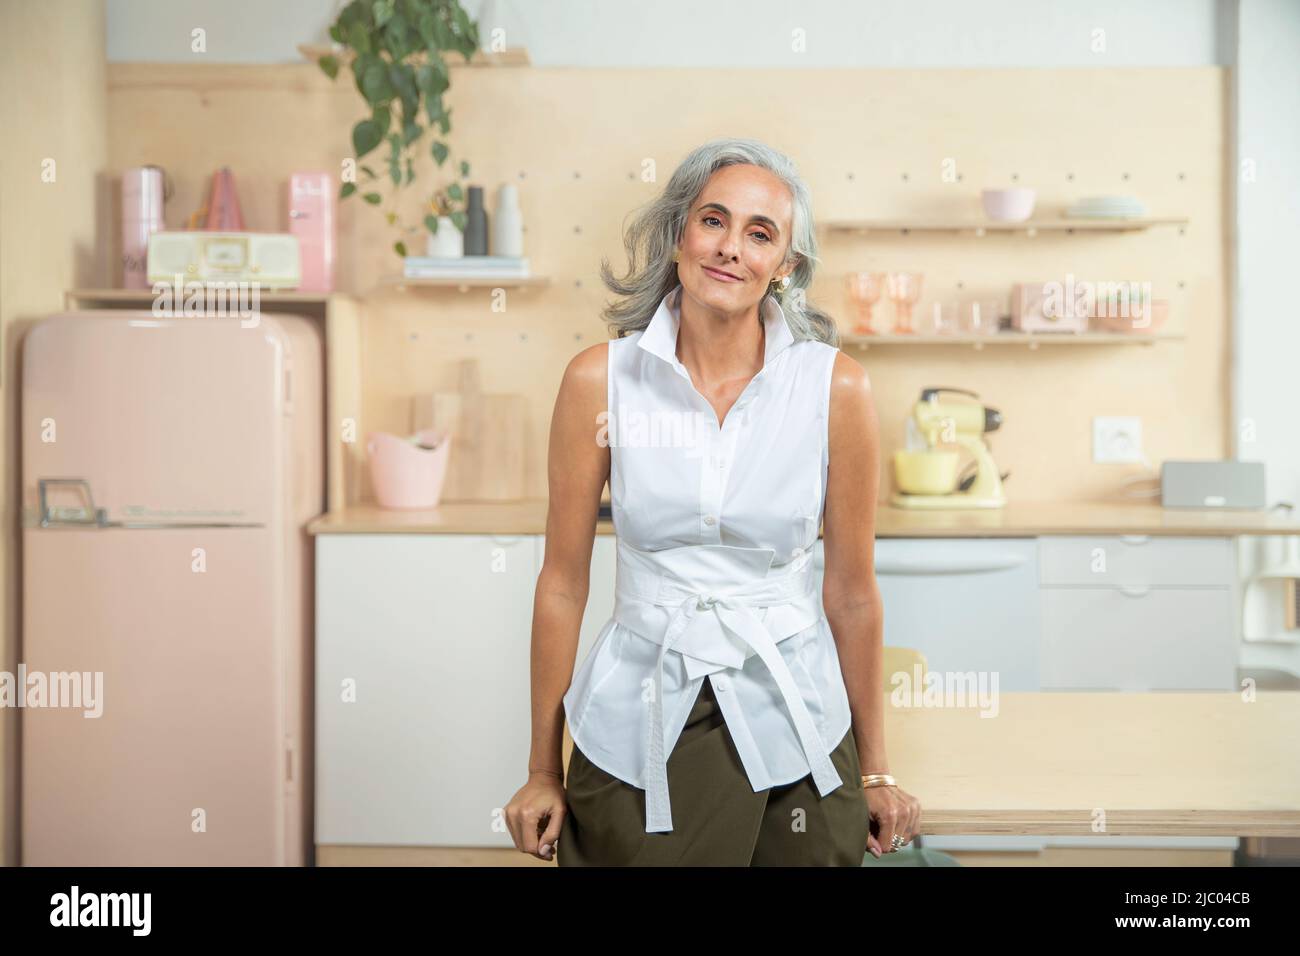 Ampio ritratto orizzontale di una donna di mezza età con capelli grigi, in piedi in una cucina guardando in macchina fotografica con sorriso sincero. Foto Stock